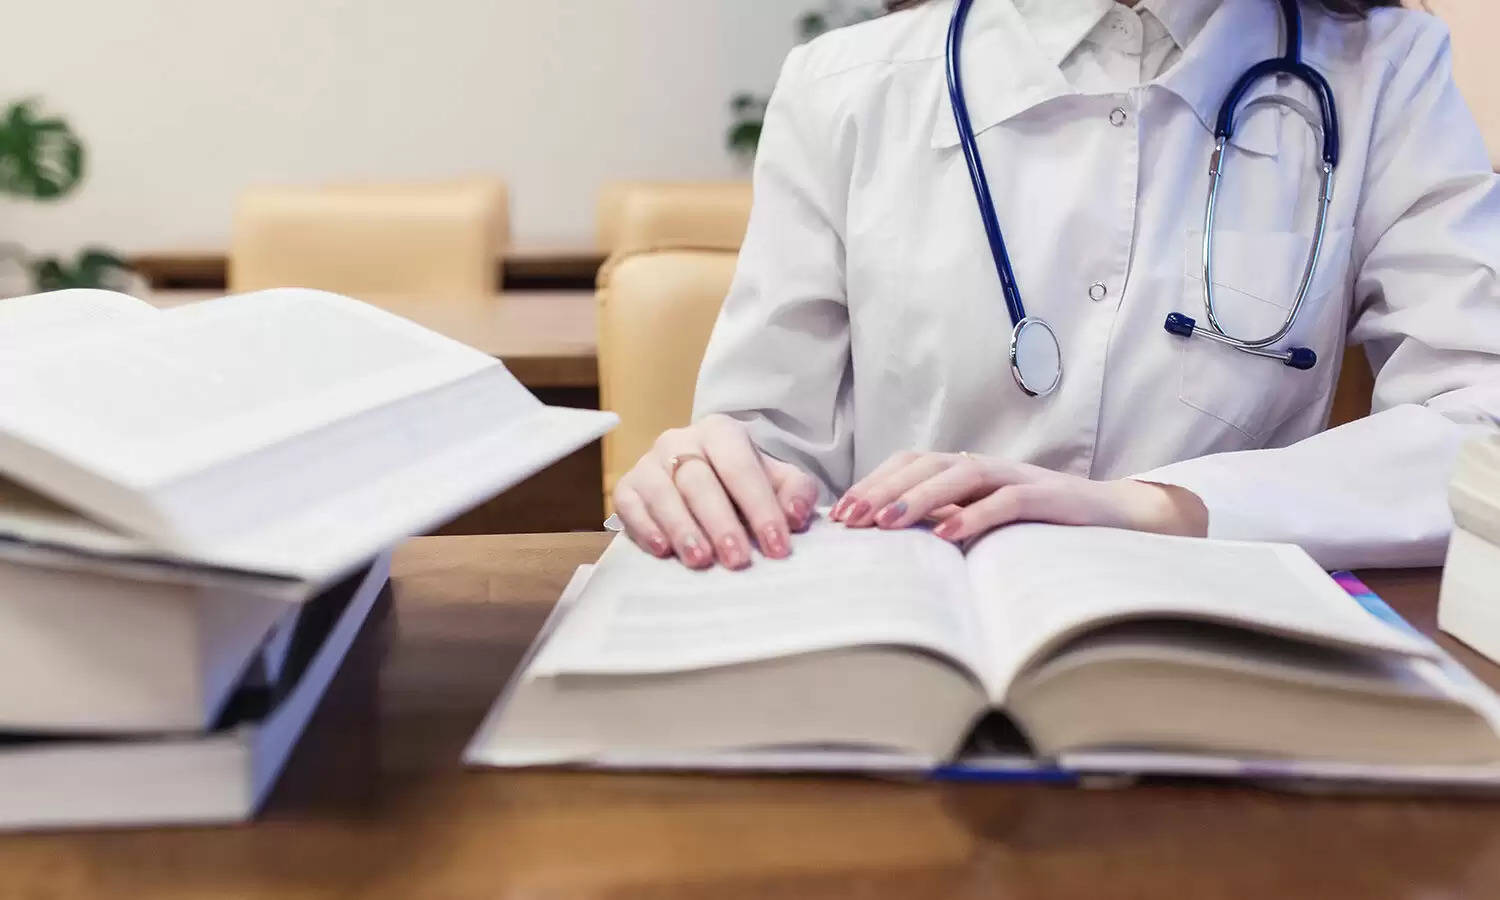 राष्ट्रीय चिकित्सा आयोग ने नए स्नातक चिकित्सा संस्थानों की स्थापना और मौजूदा पाठ्यक्रम के लिए जारी किये दिशा-निर्देश 